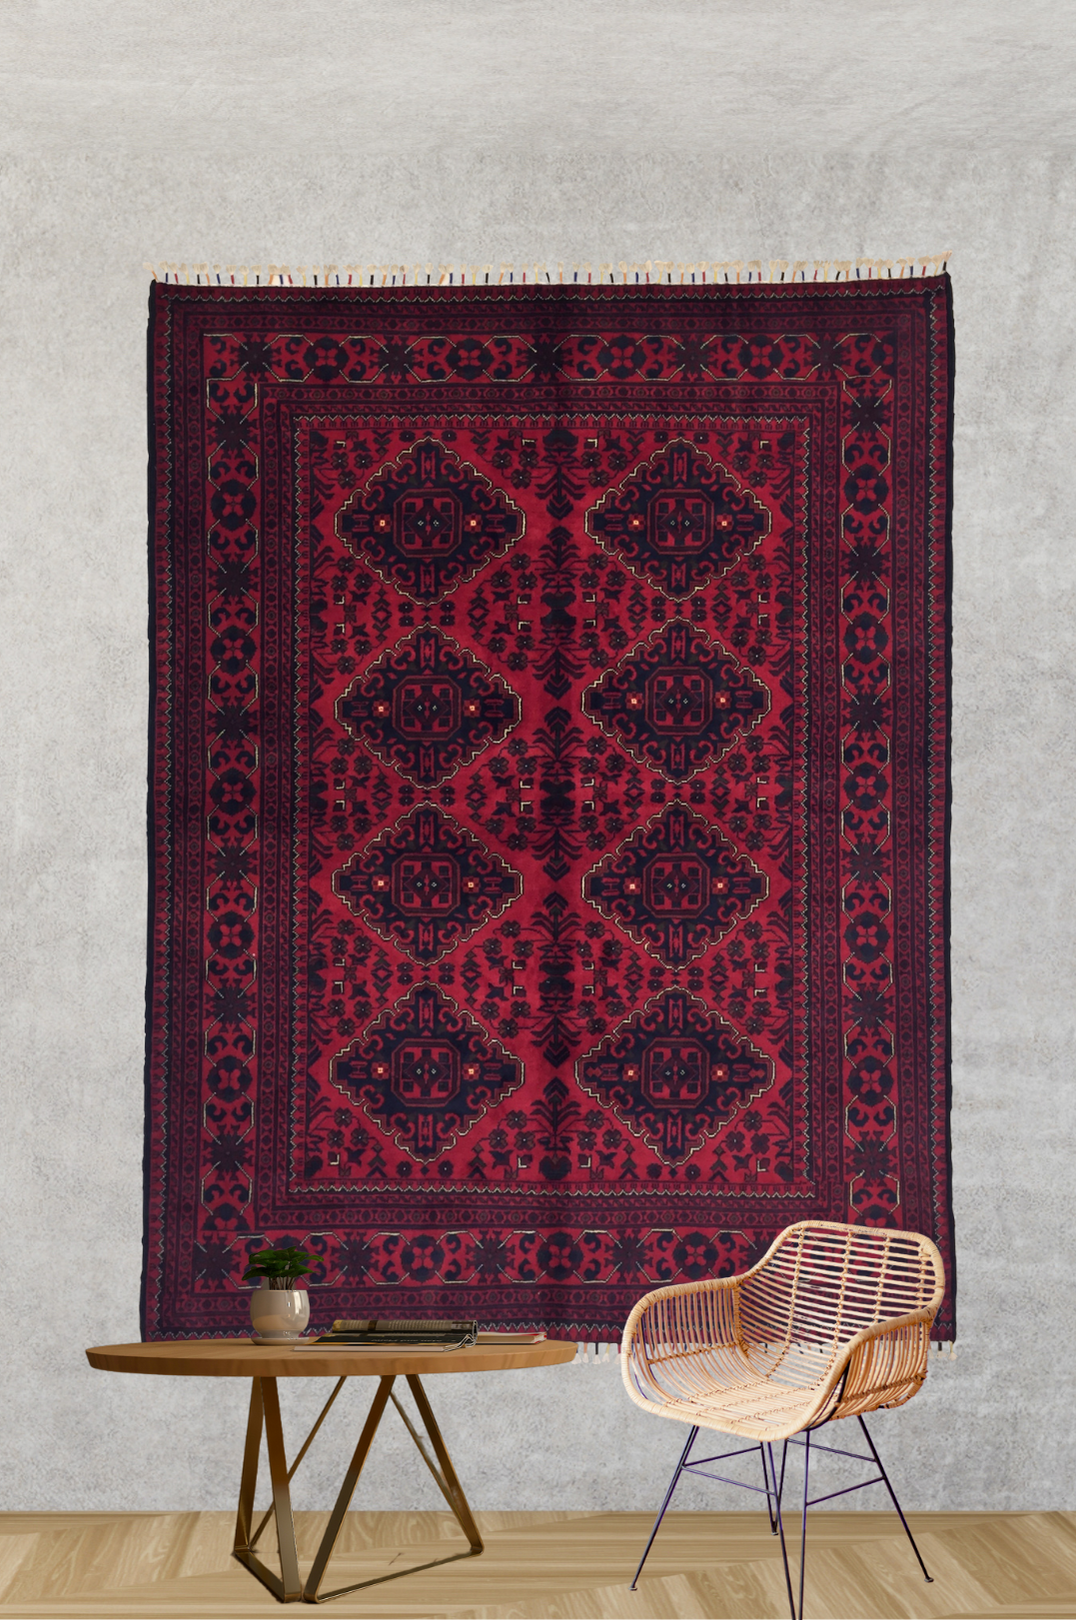 Kunduz Bicolor Carpet 200 X 154 cm - Alfombras de Estambul -  Kunduz - Alfombras de Estambul